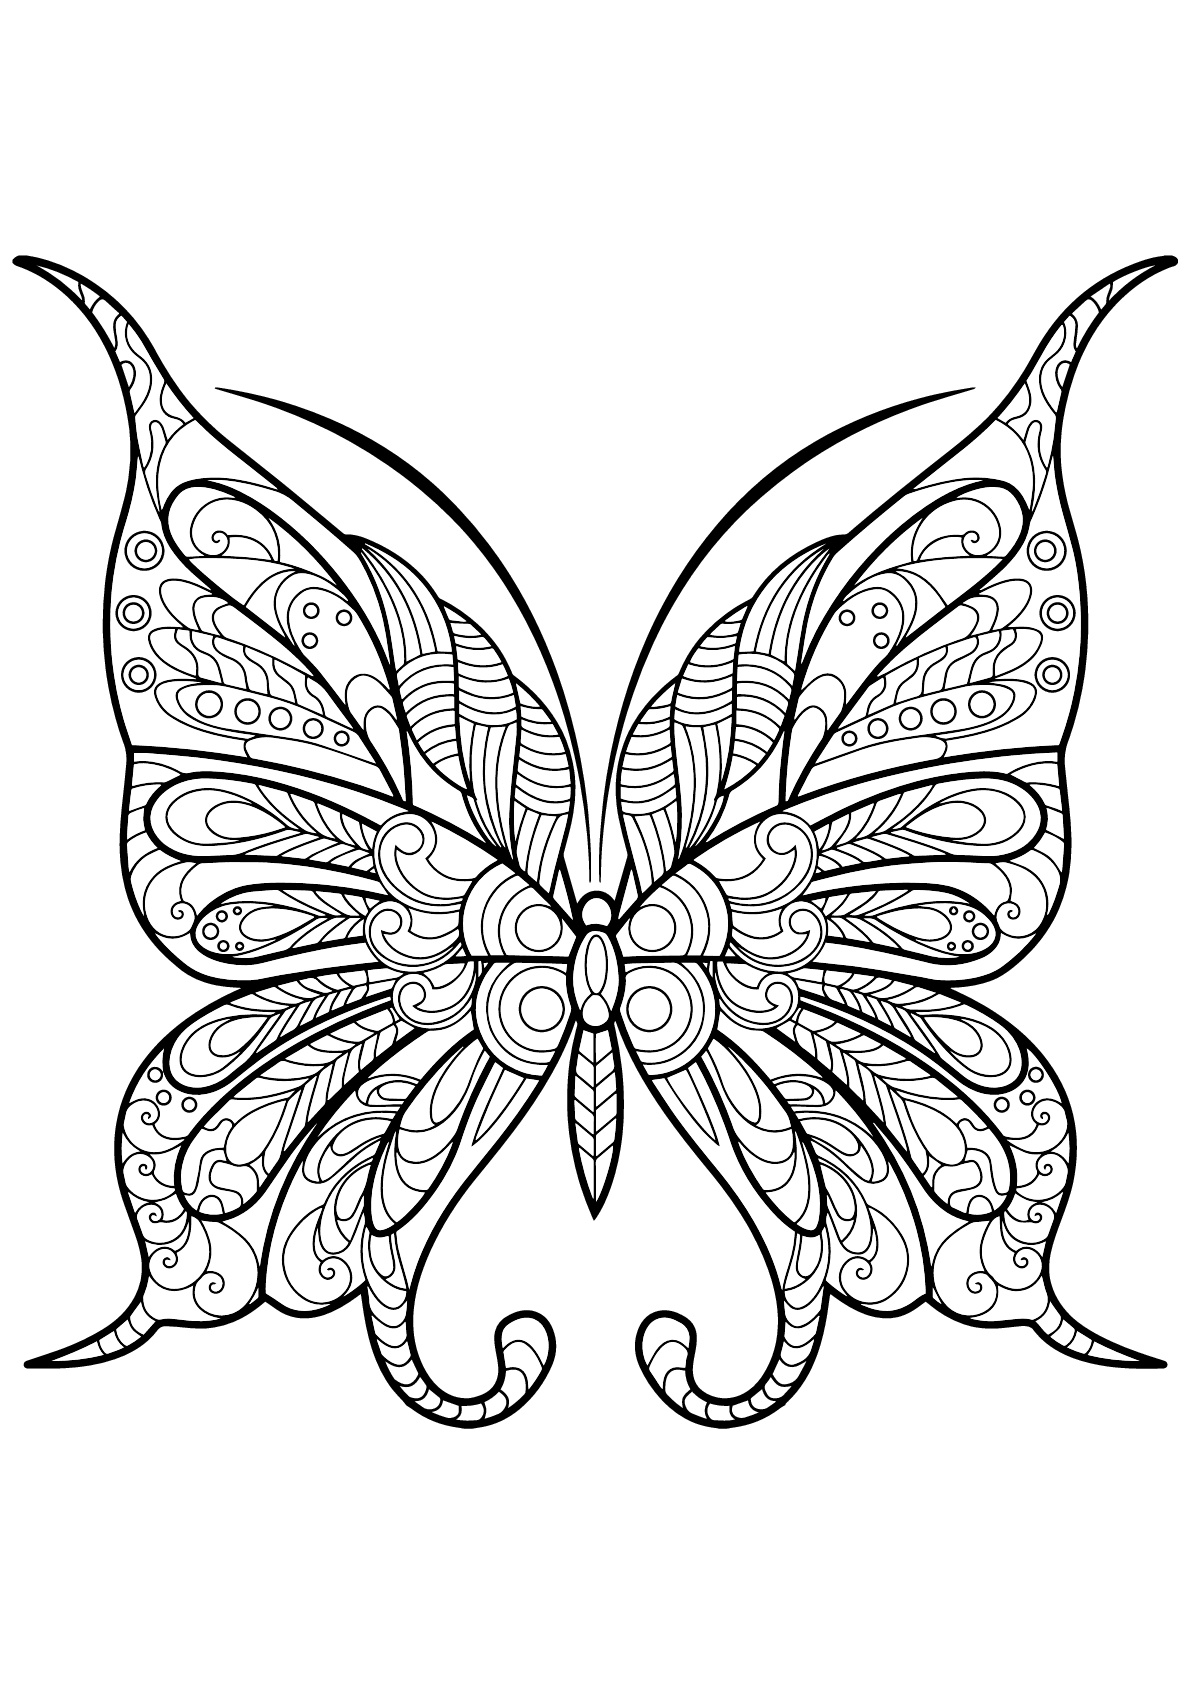 Mariposa con bellos e intrincados dibujos - 9